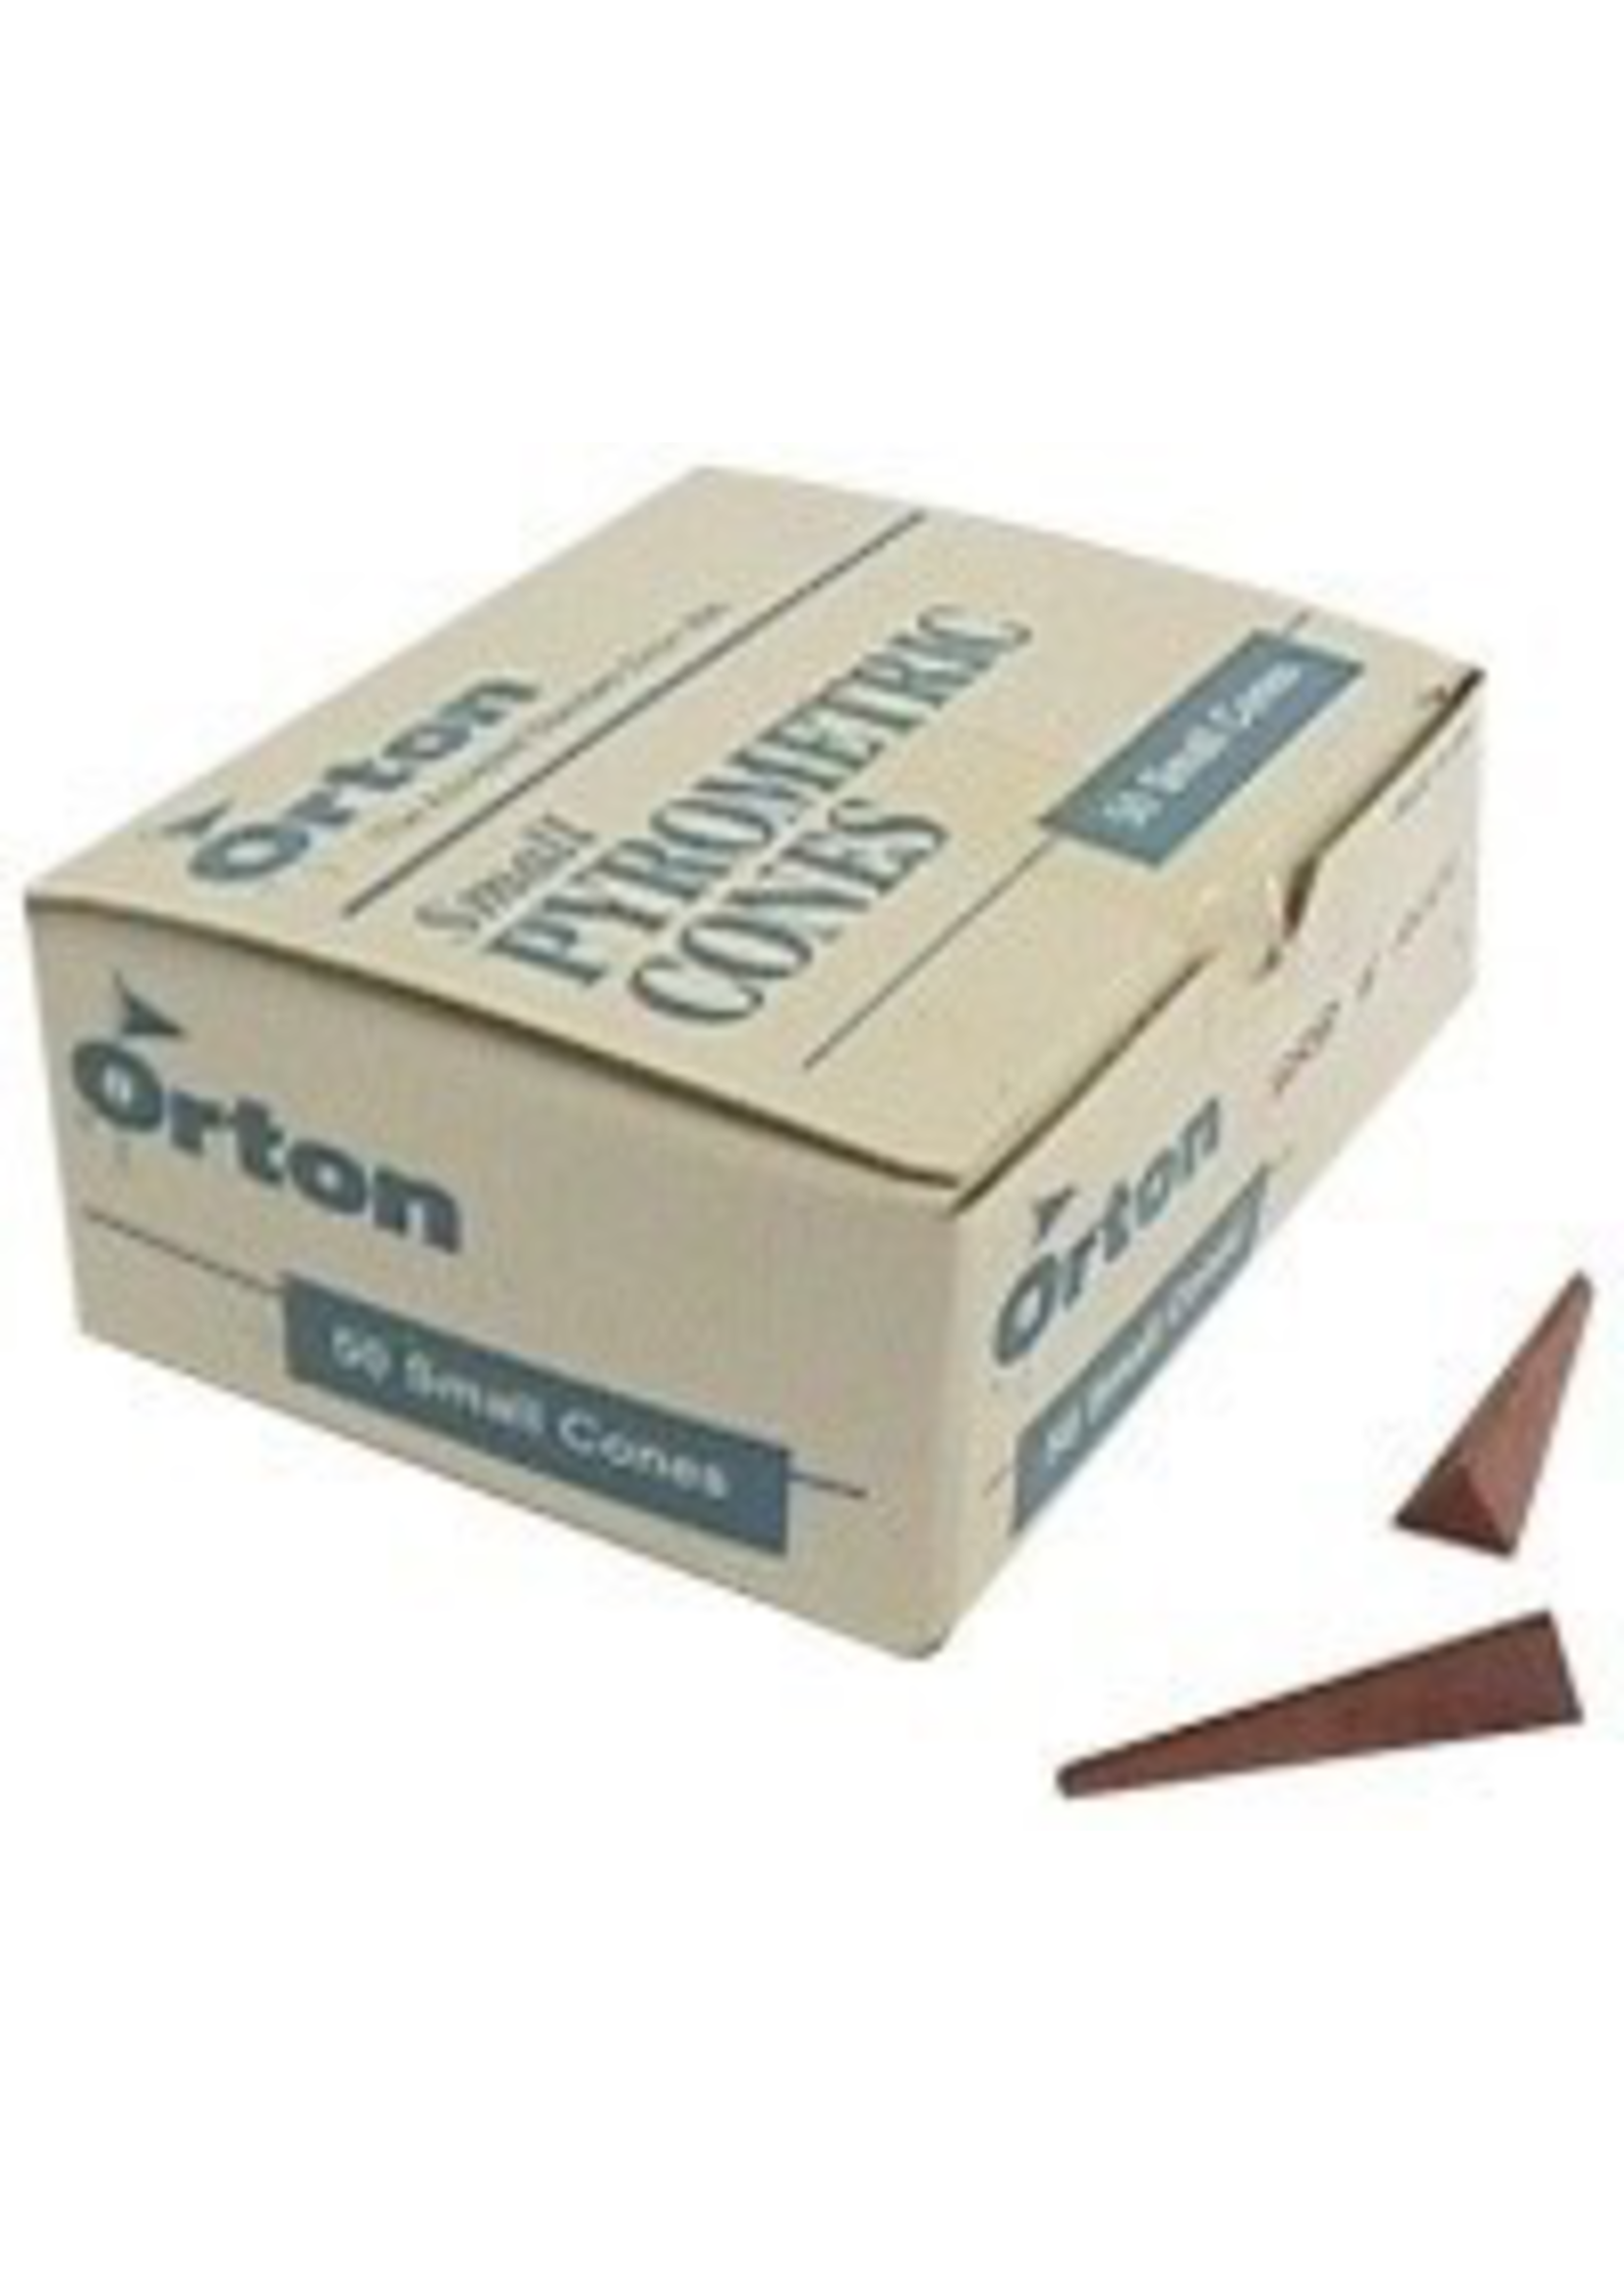 Orton small cone 01 (x10)